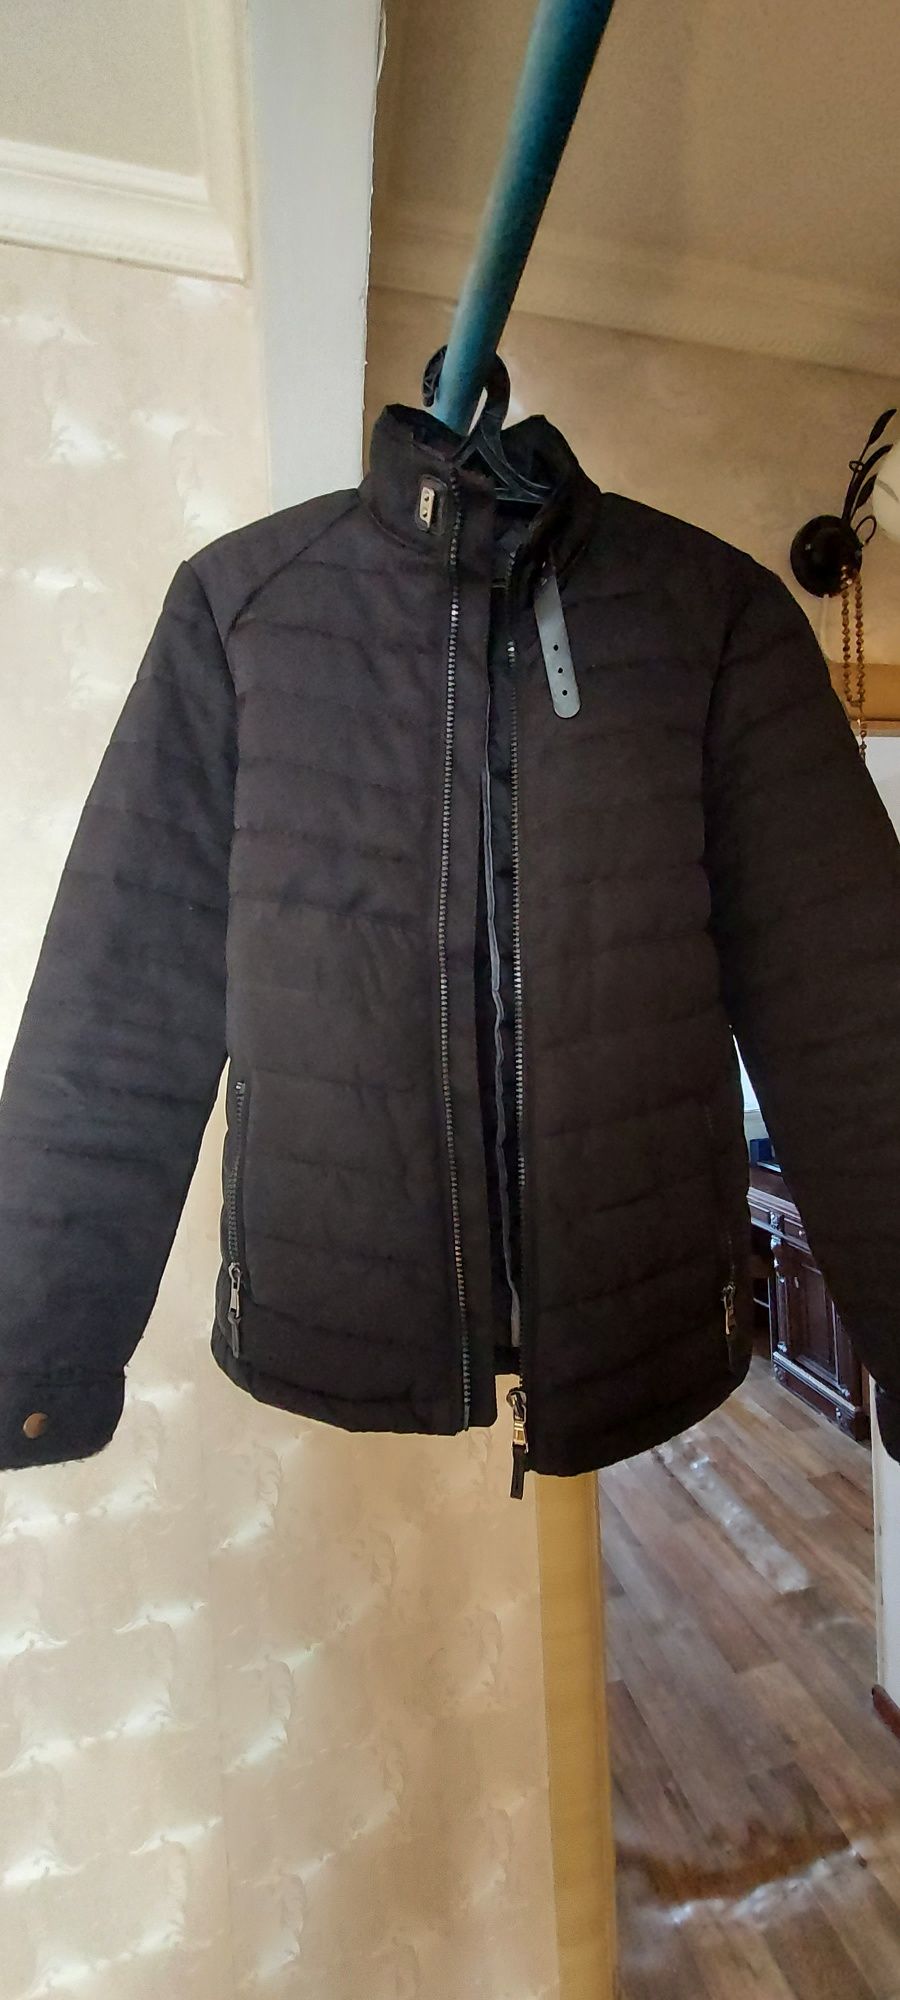 Продам куртку весна - осень, бренд De Facto, размер 48